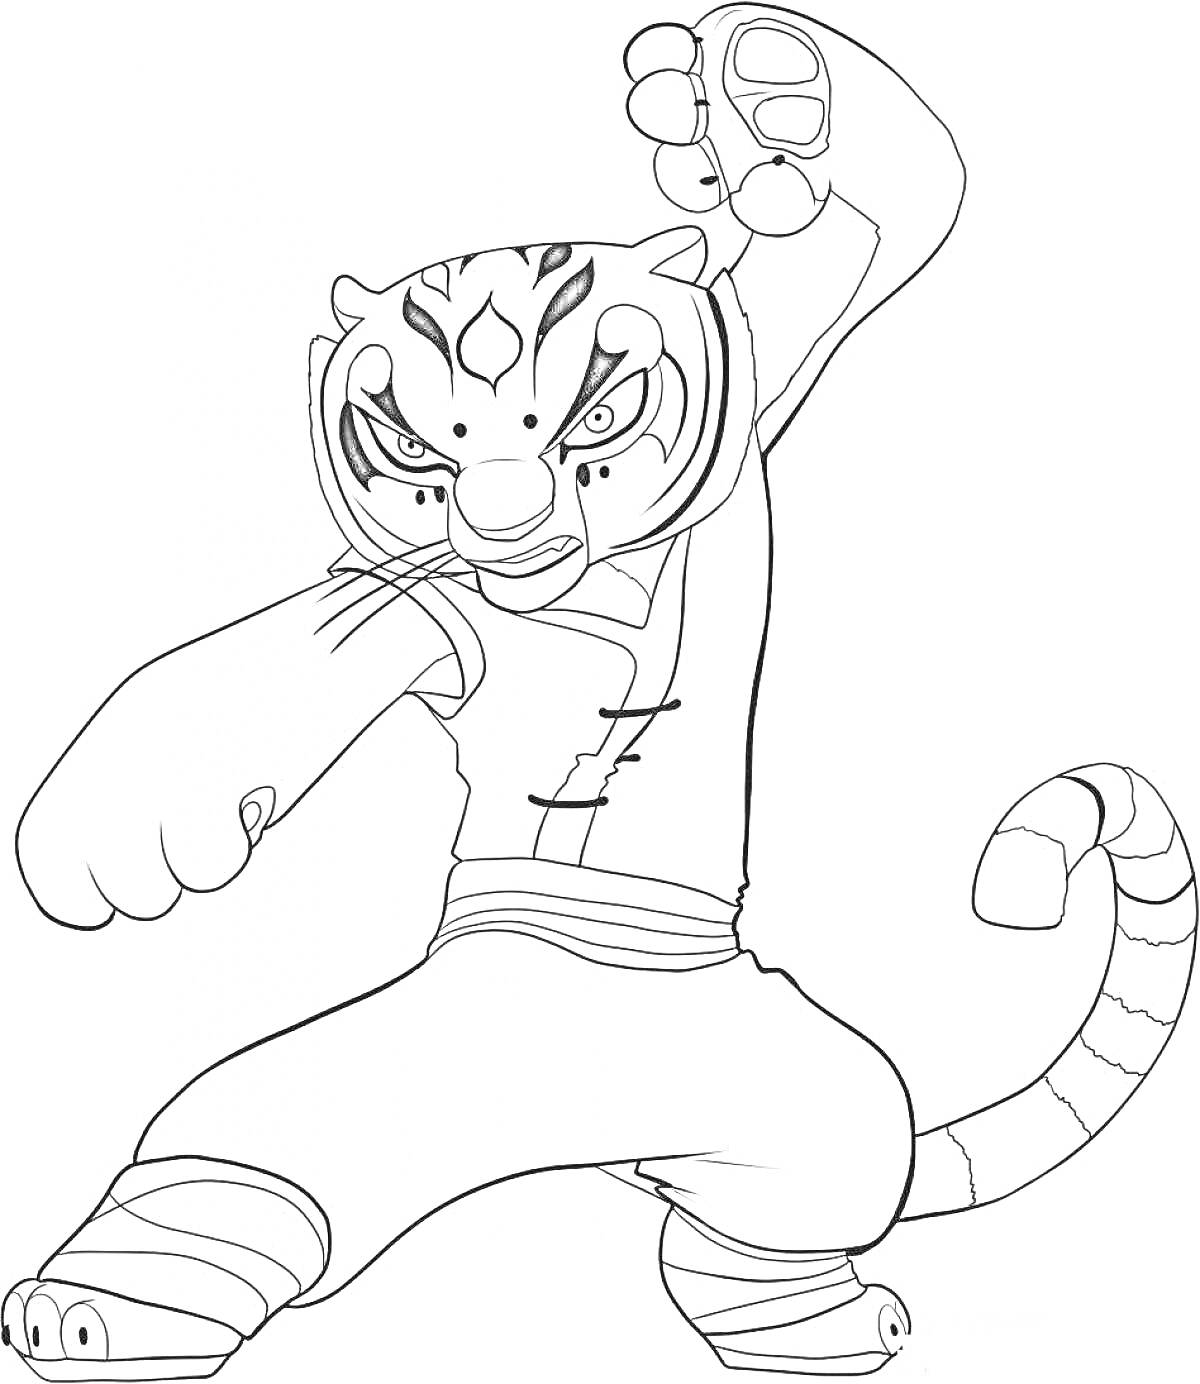 Тигр из Гуджитсу в боевой позе с поднятым кулаком и полосатым хвостом